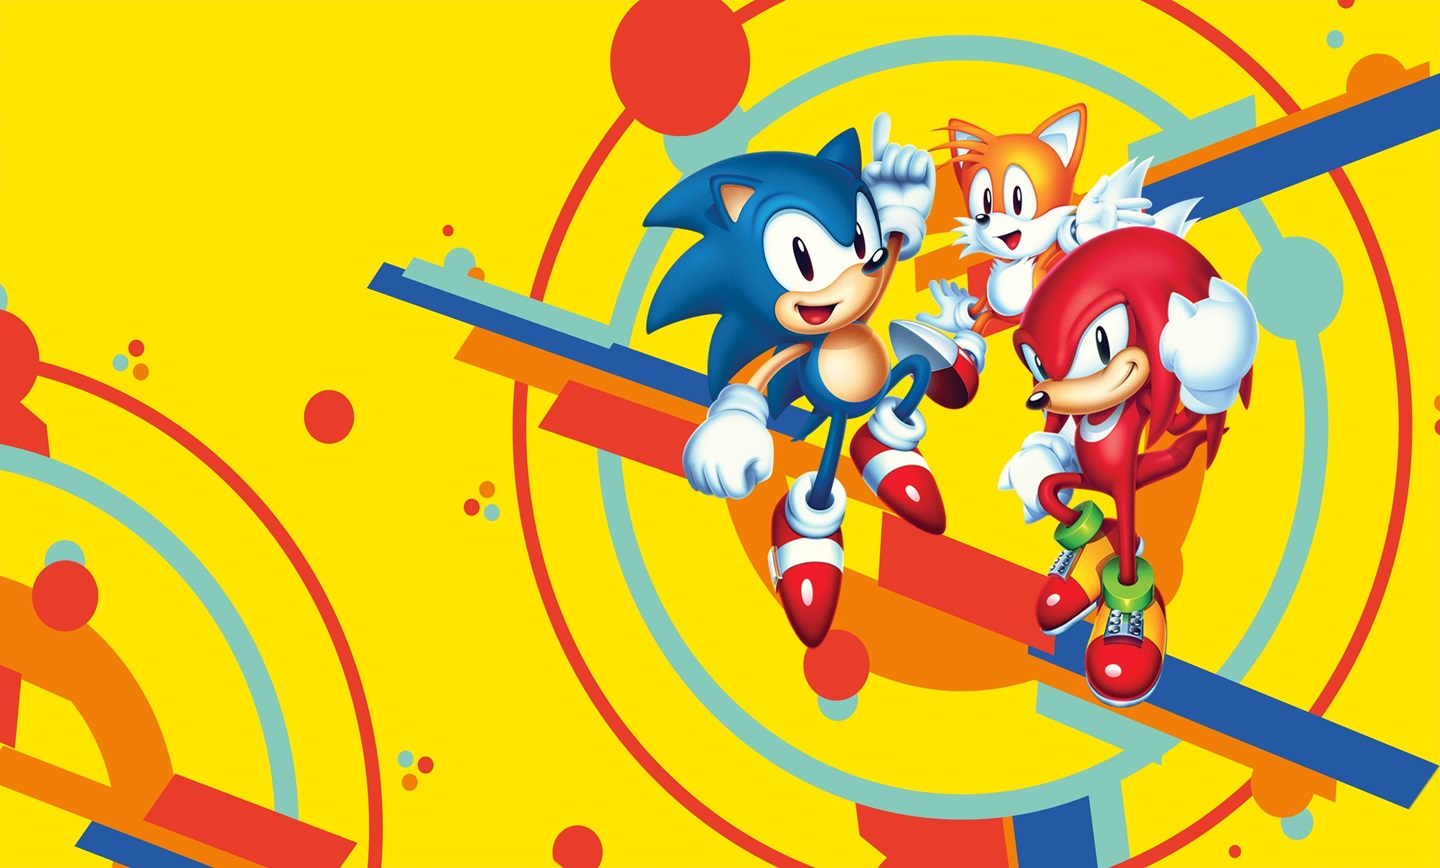 بازی Sonic Mania Plus